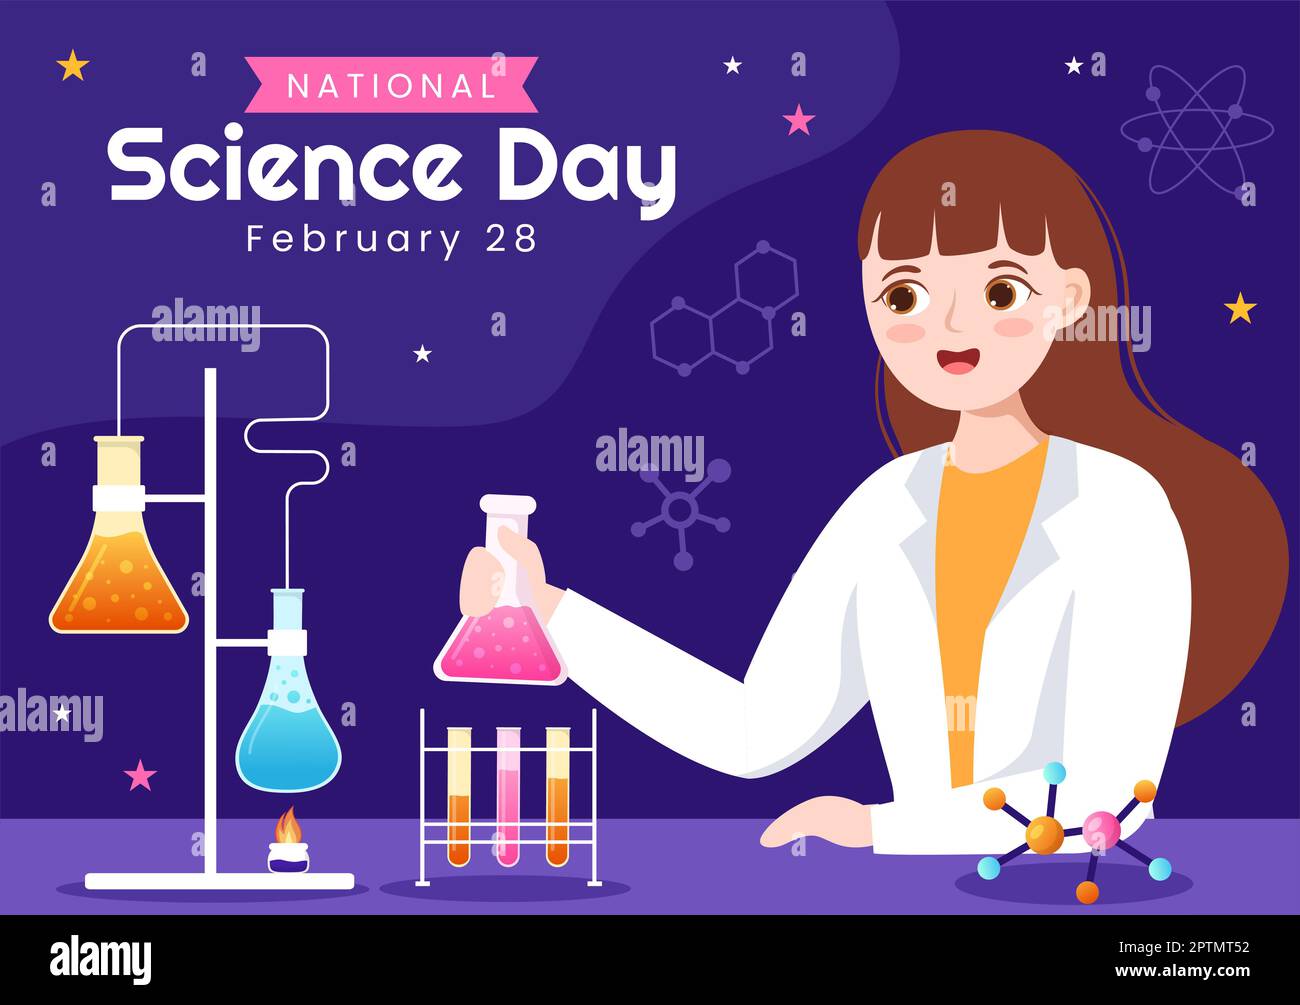 Día Nacional de la Ciencia 28 de febrero Relacionado con Líquido Químico, Científico, Médico e Investigación en Cartoon Plano Plantillas Dibujadas a mano Ilustración Foto de stock